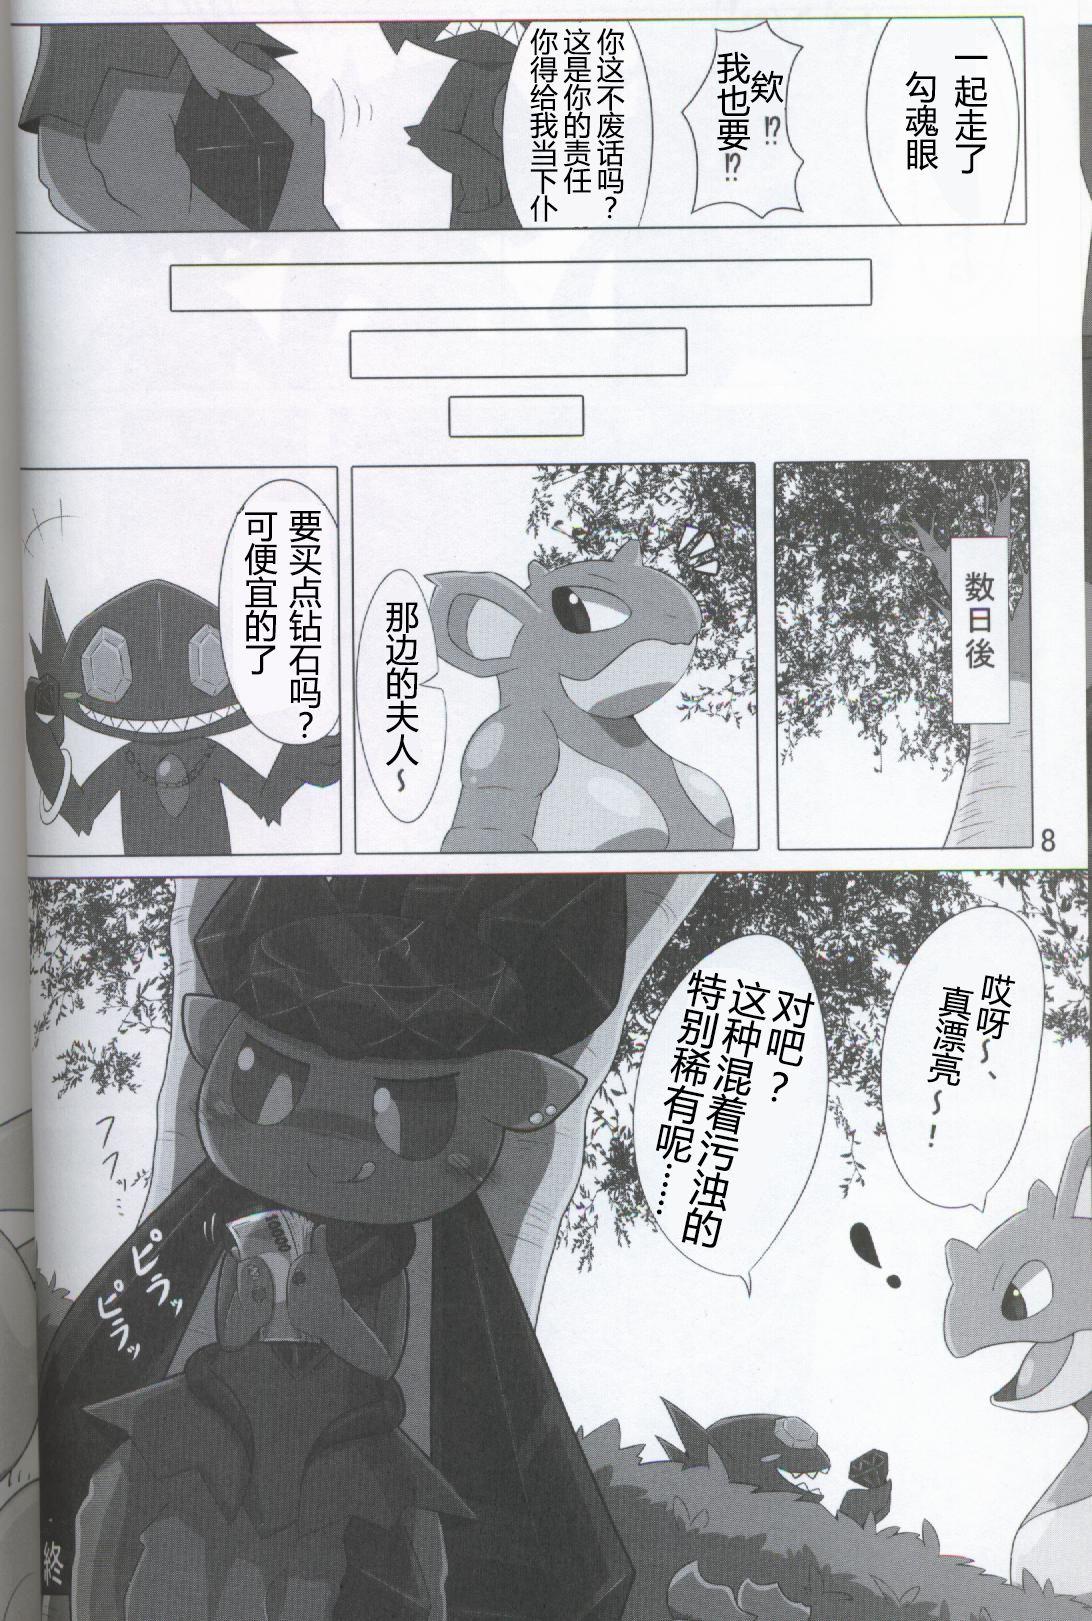 Stunning Pokéda | 宝可堕 - Pokemon Jerking Off - Page 9